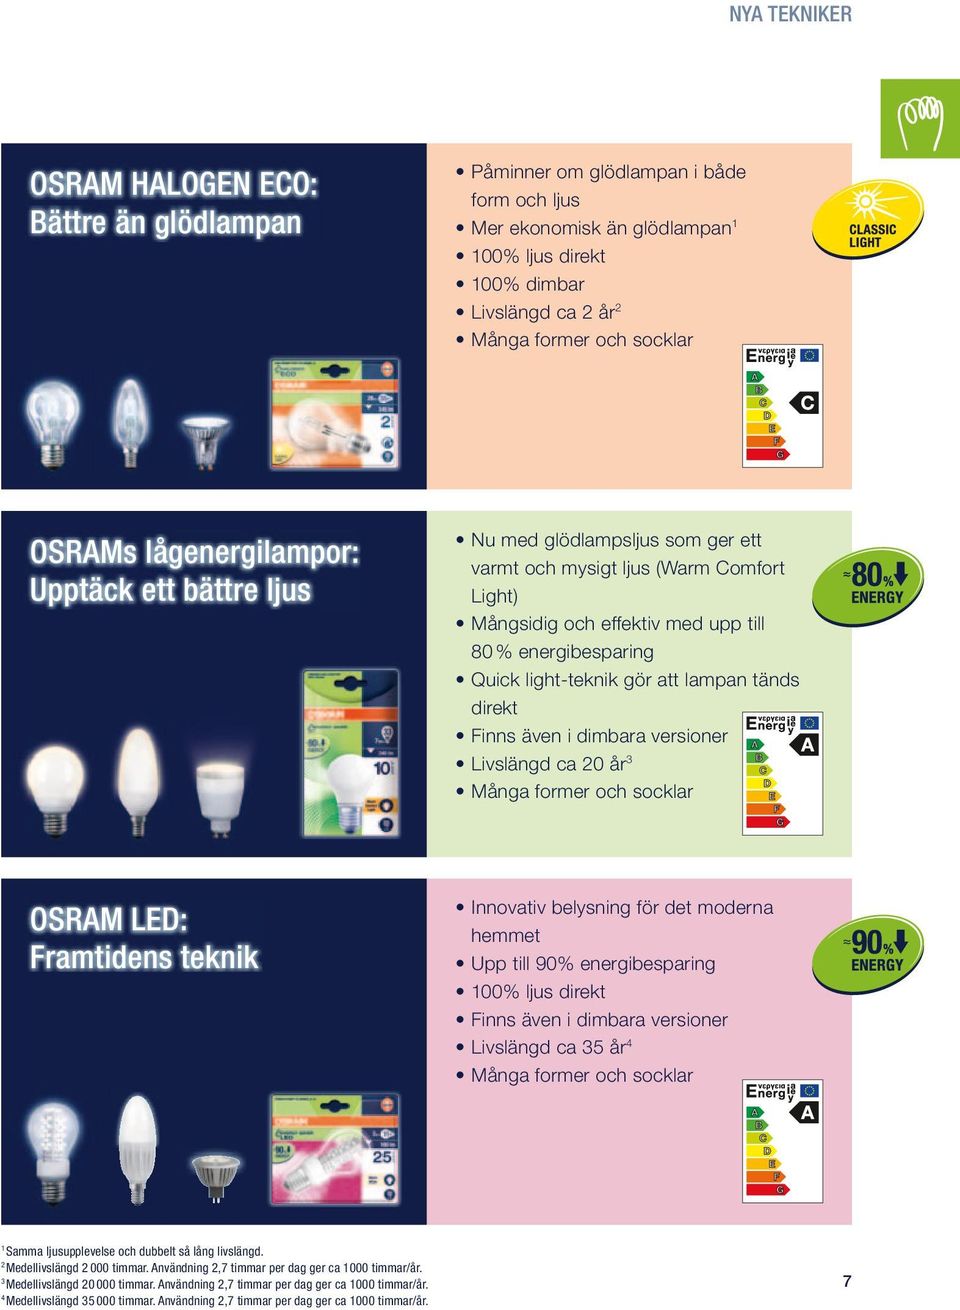 light-teknik gör att lampan tänds direkt Finns även i dimbara versioner Livslängd ca 20 år 3 Många former och socklar OSRAM LED: Framtidens teknik Innovativ belysning för det moderna hemmet Upp till